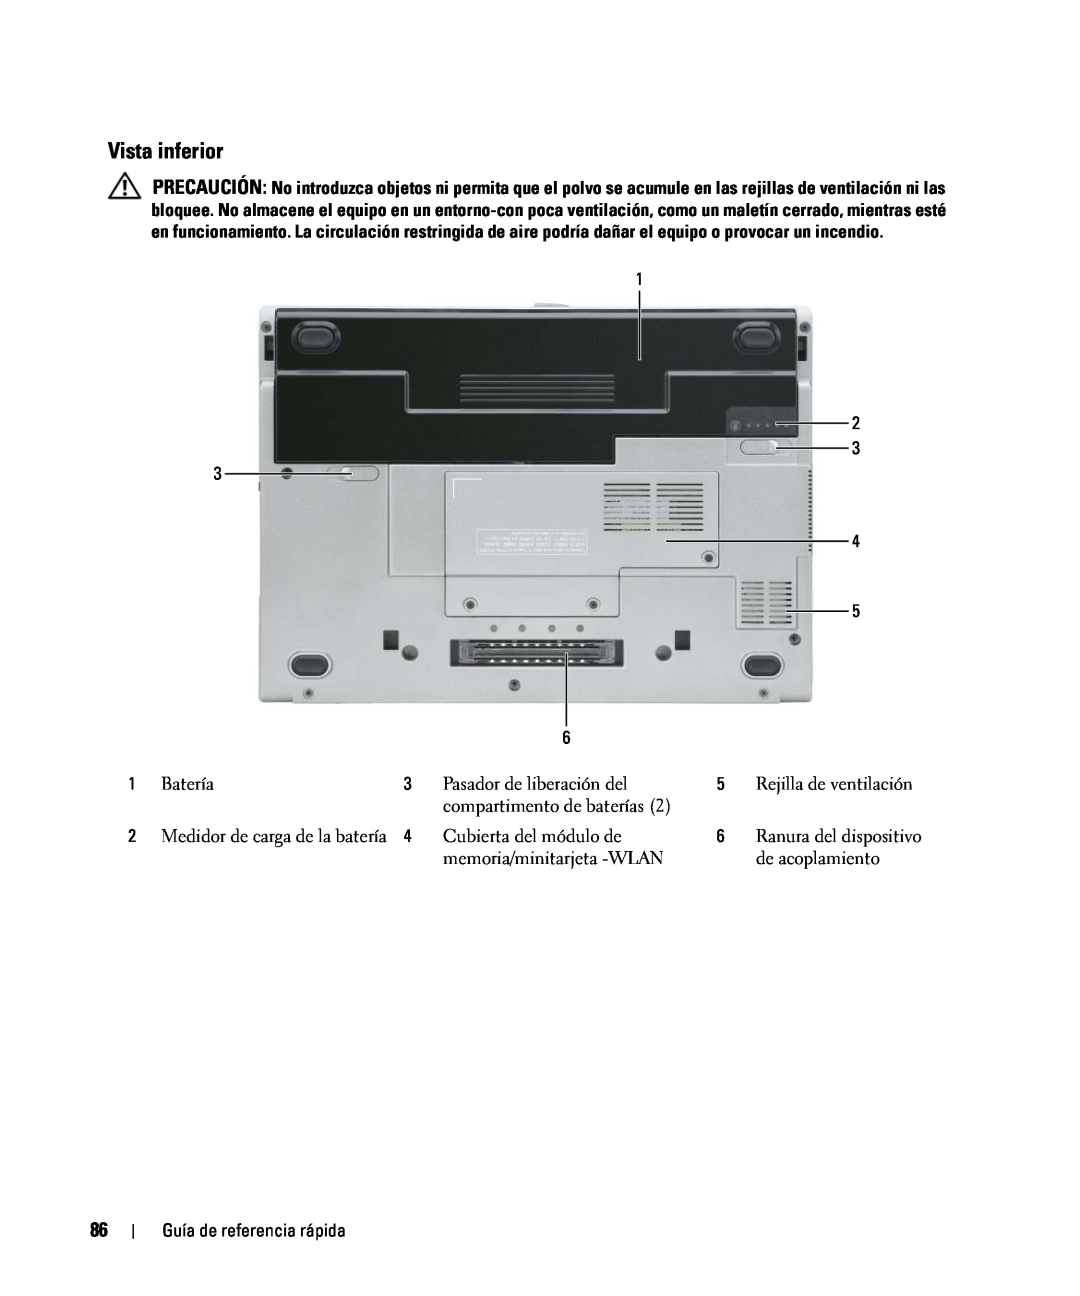 Dell D420 manual Vista inferior, Batería, Pasador de liberación del, Rejilla de ventilación, compartimento de baterías 